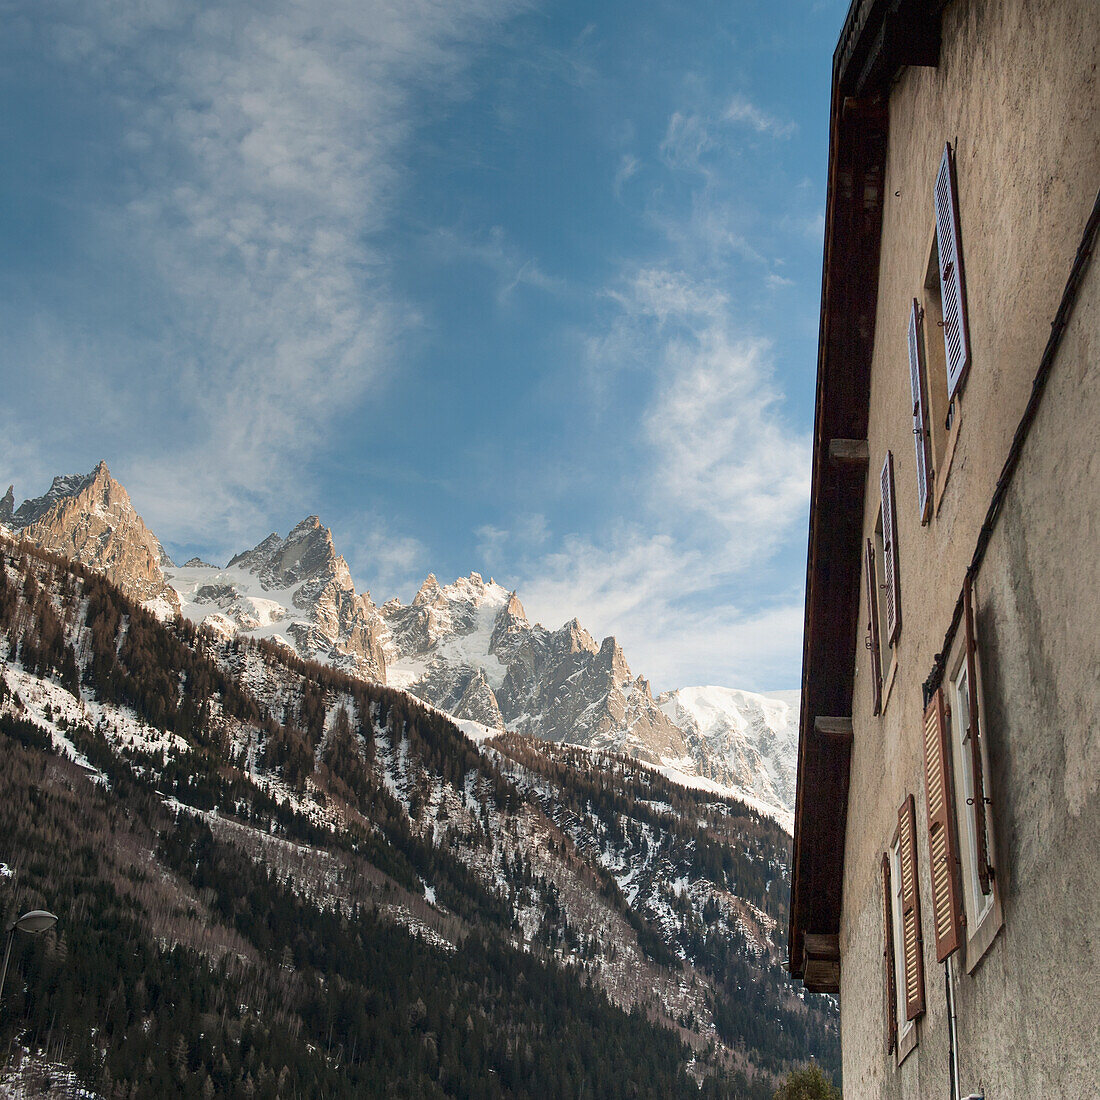 Niedriger Blickwinkel auf ein Gebäude neben den französischen Alpen; Chamonix-Mont-Blanc Rhone-Alpes Frankreich